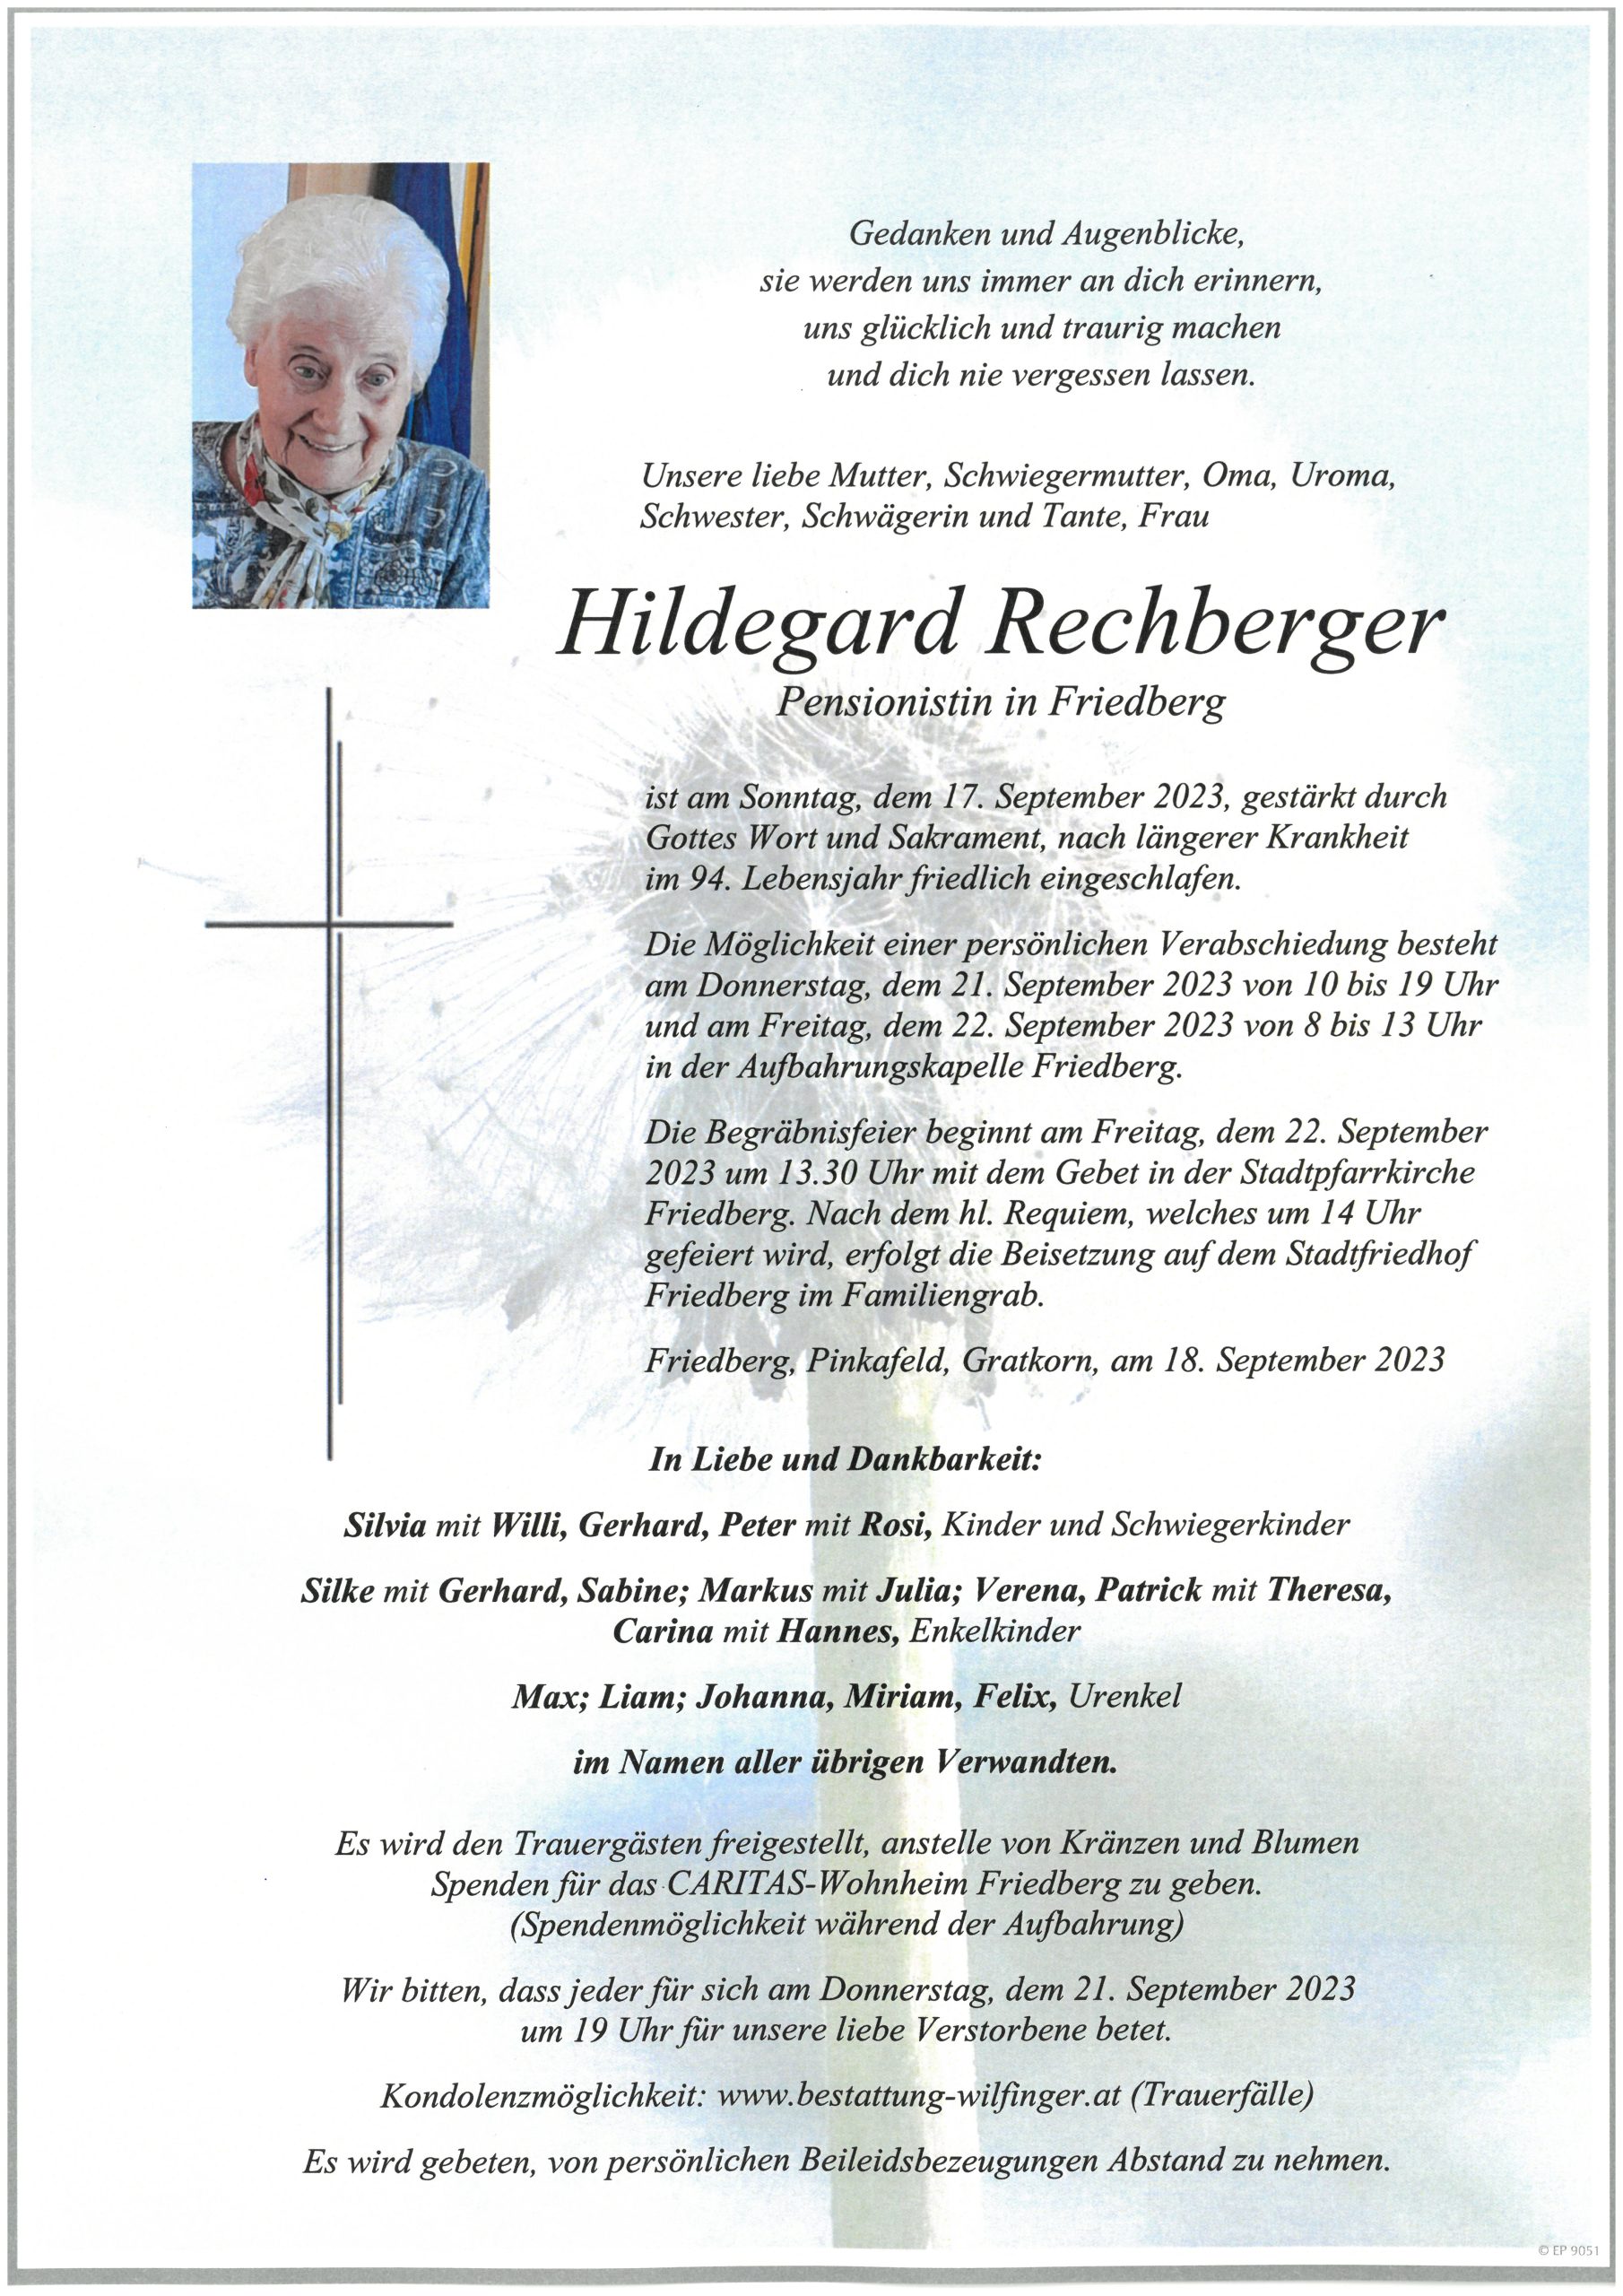 Hildegard Rechberger, Friedberg